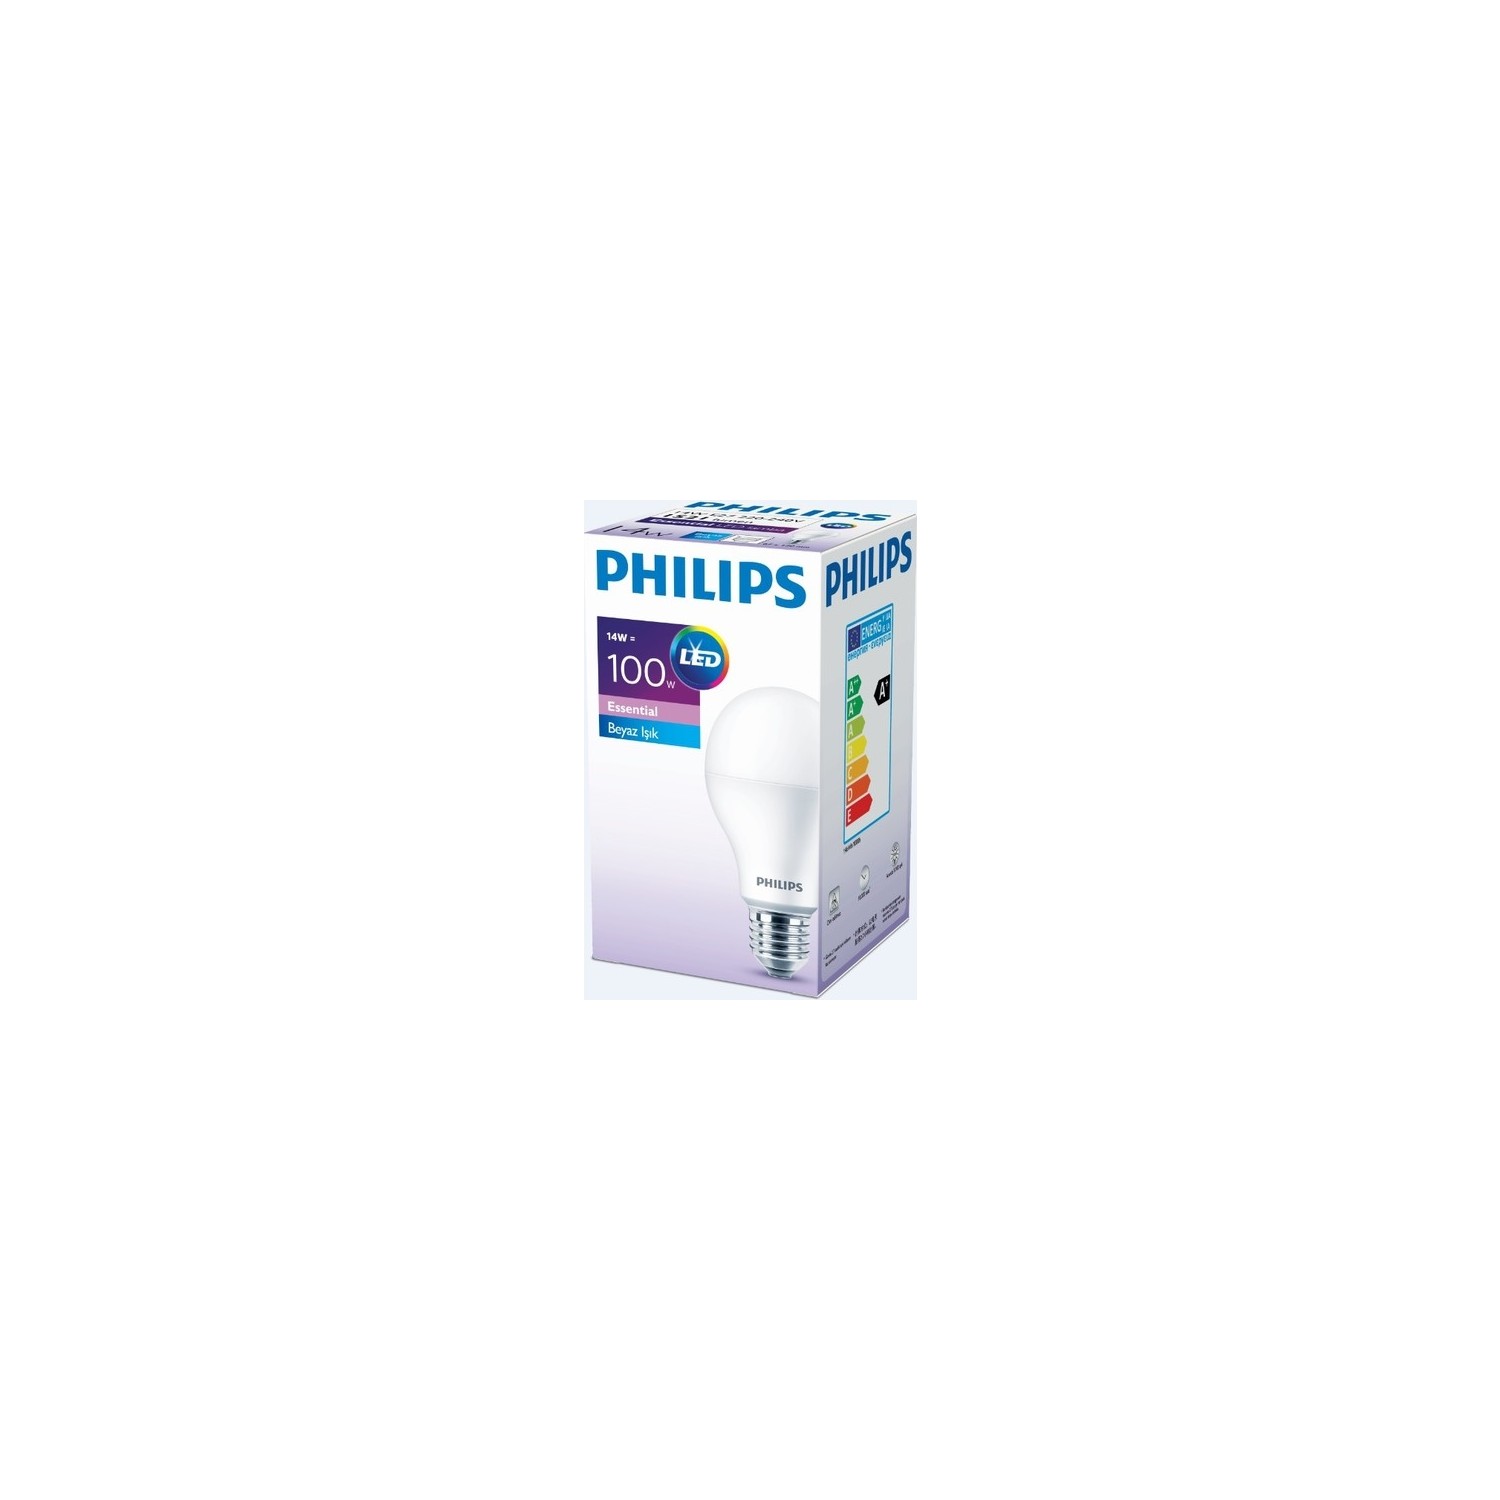 Philips Essential Led Ampul 13W (14)W -100W Beyaz Renk E27 3’lü Paket